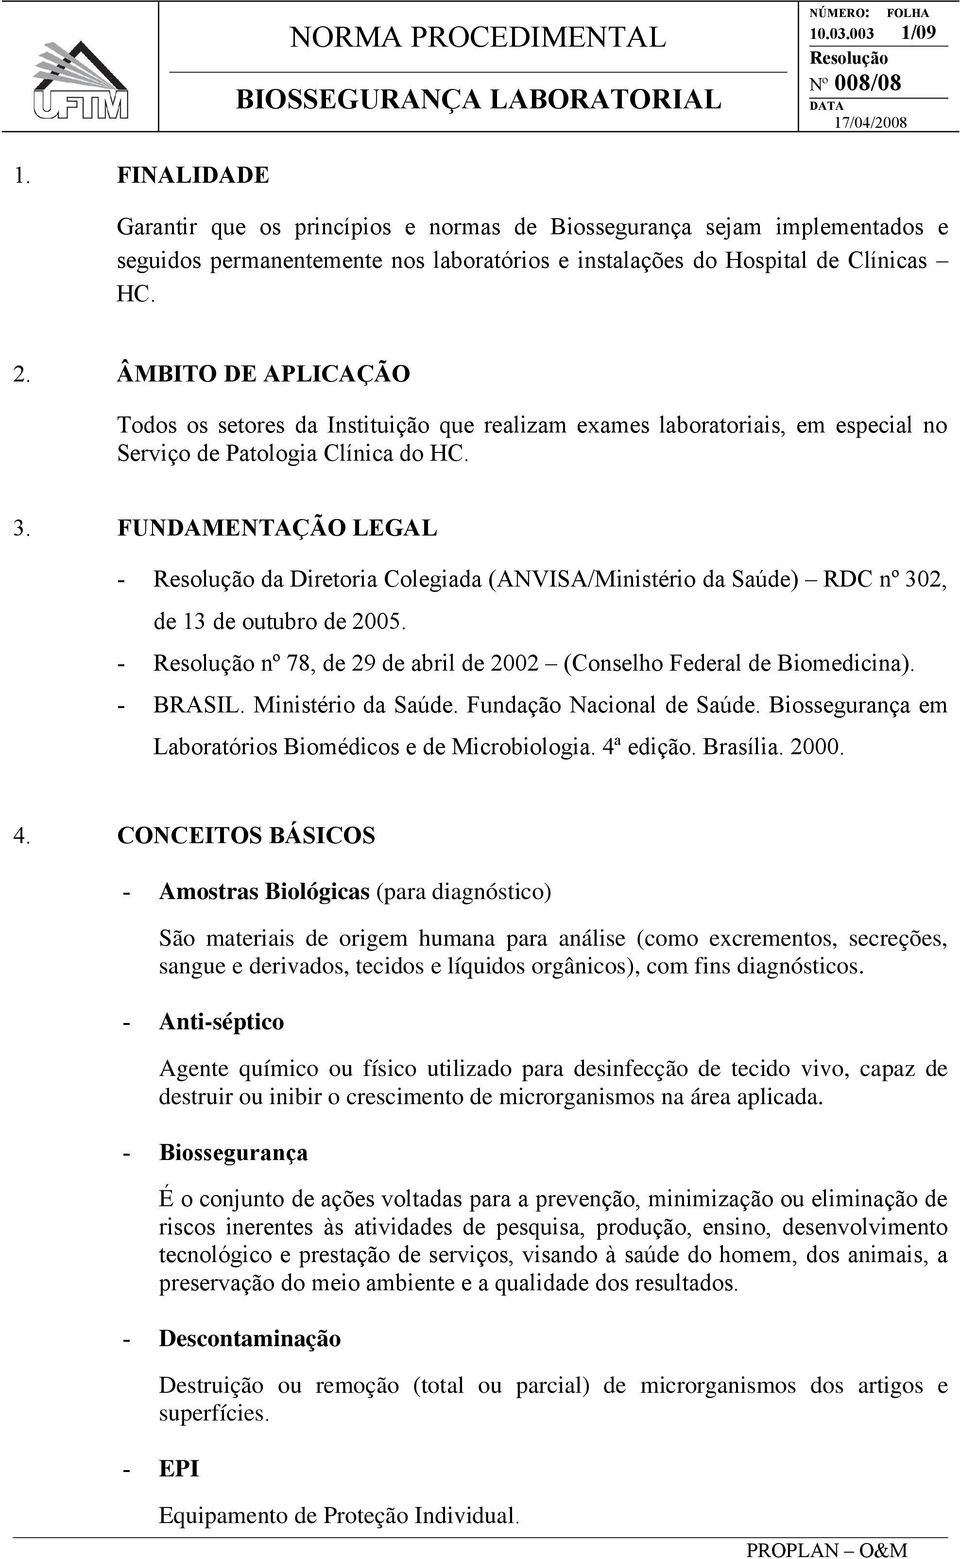 FUNDAMENTAÇÃO LEGAL - da Diretoria Colegiada (ANVISA/Ministério da Saúde) RDC nº 302, de 13 de outubro de 2005. - nº 78, de 29 de abril de 2002 (Conselho Federal de Biomedicina). - BRASIL.